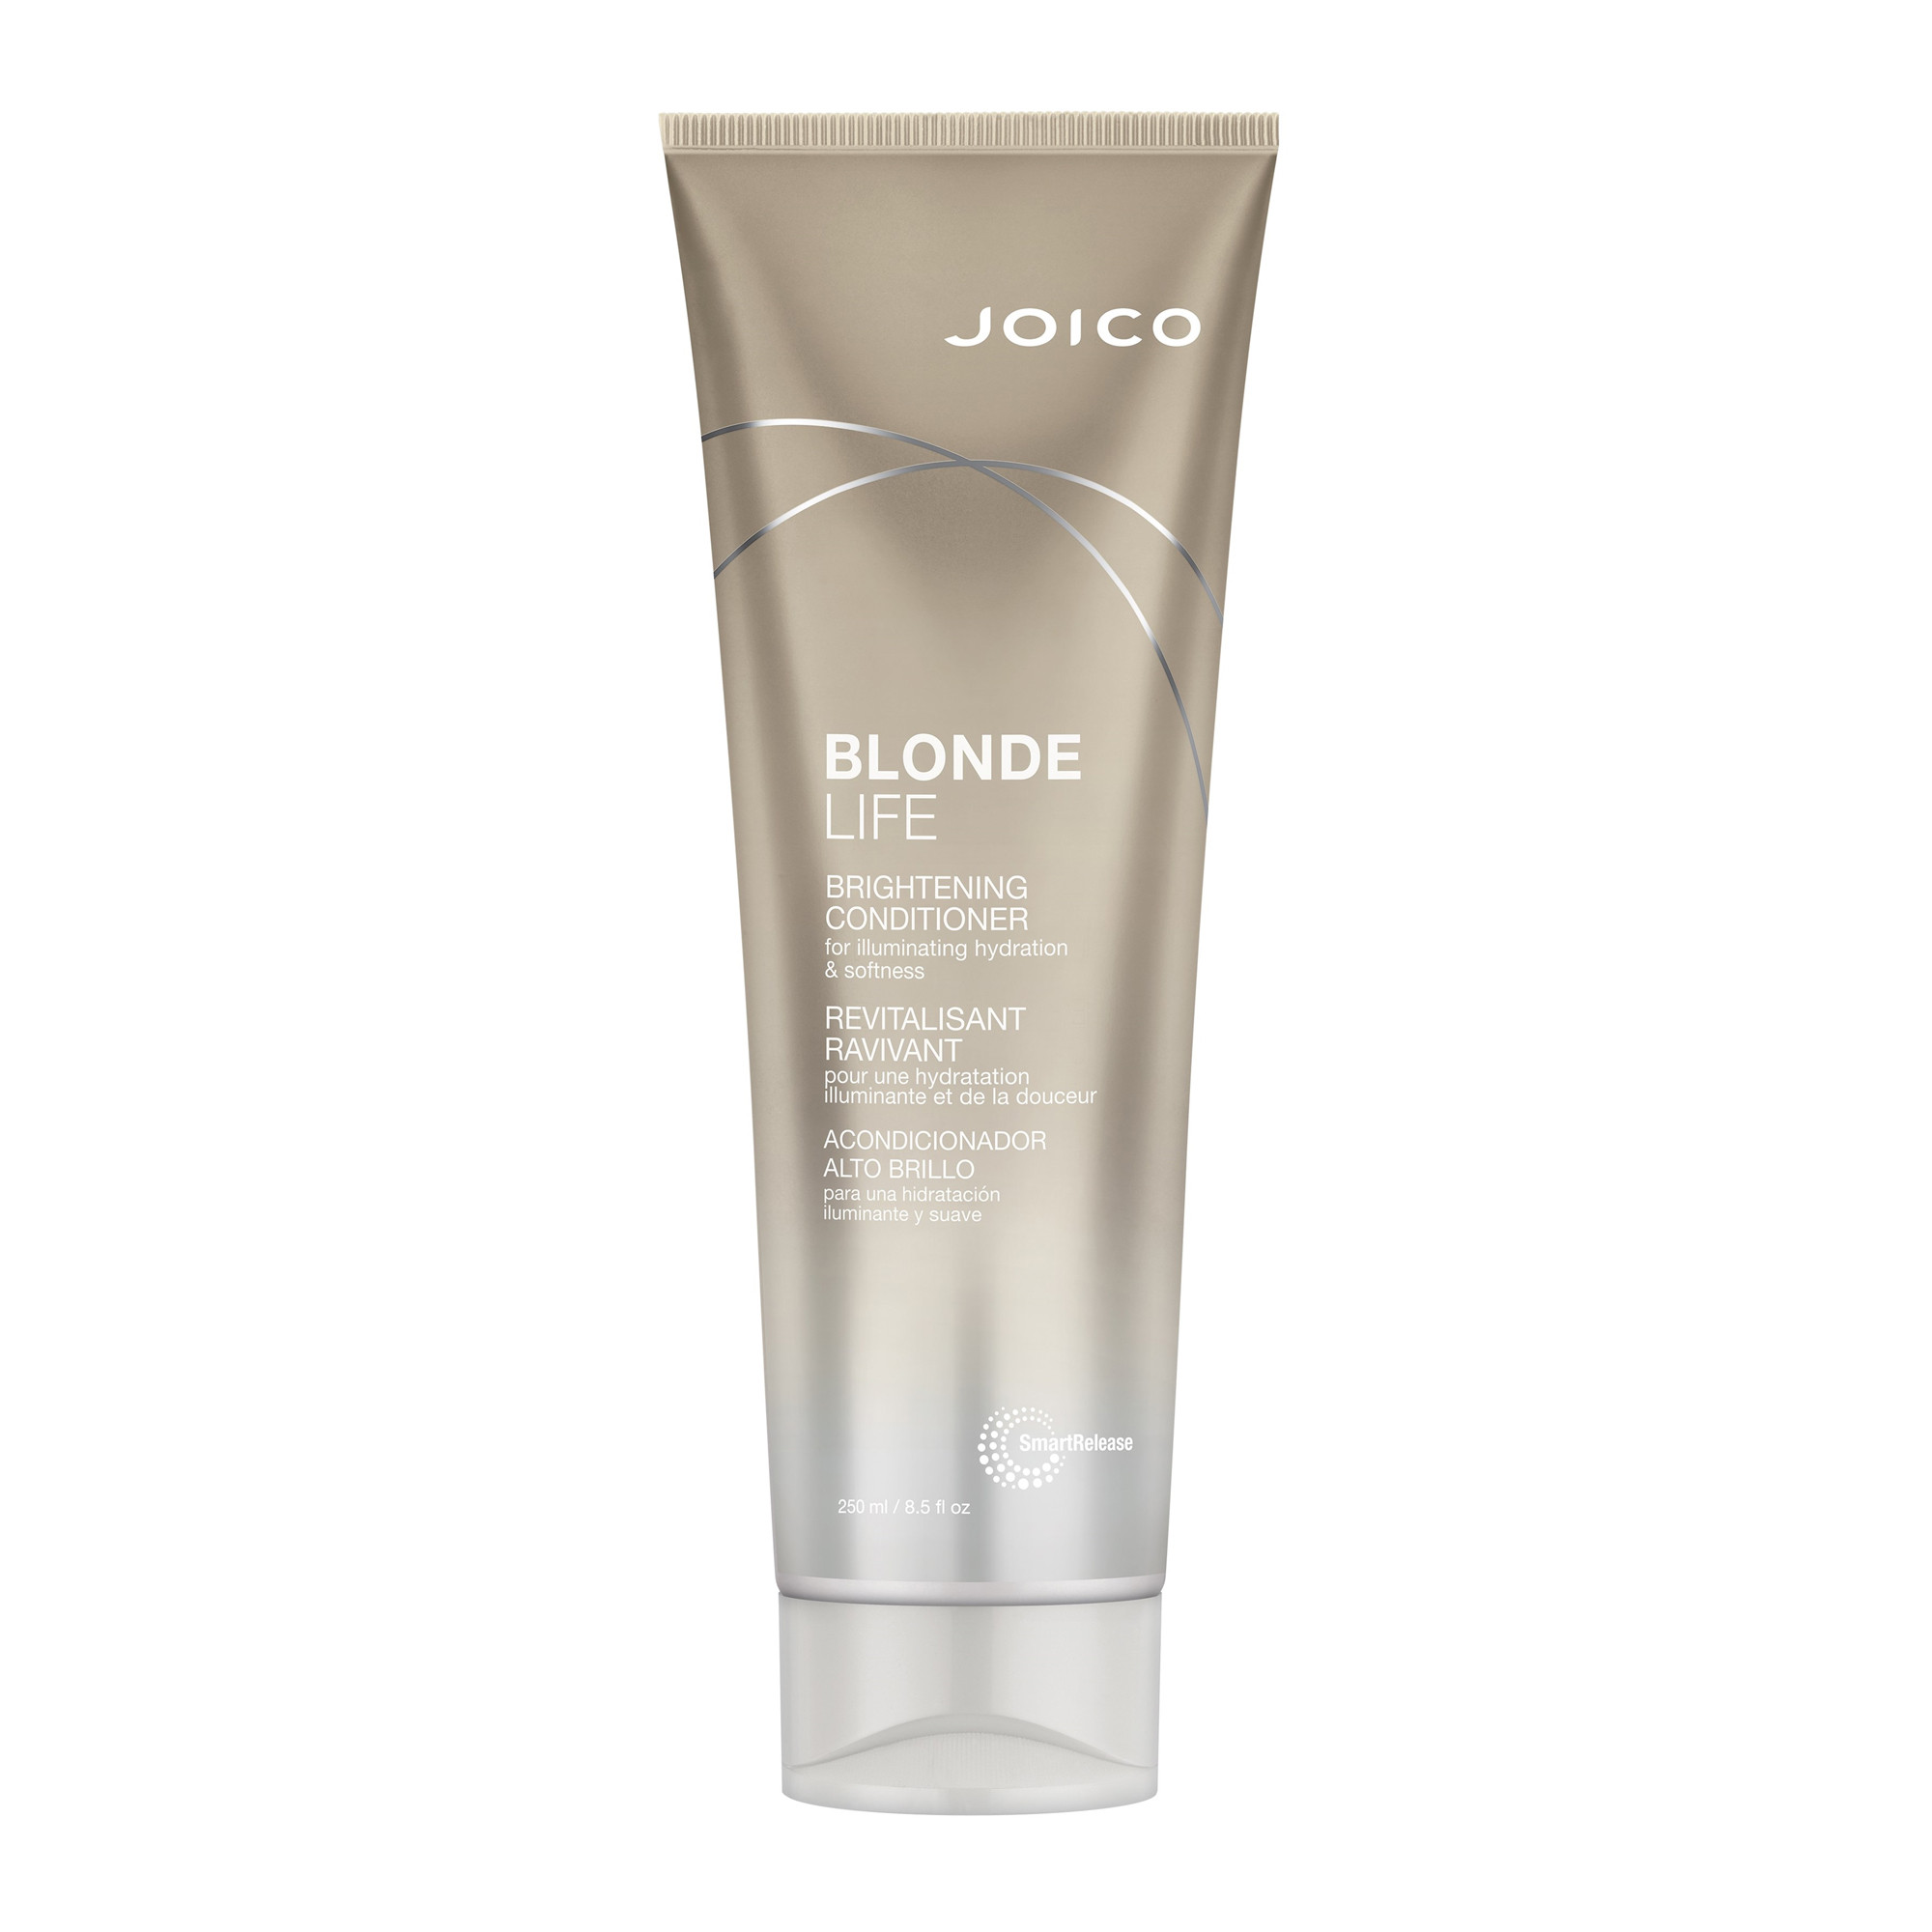 Кондиционер для сохранения яркости блонда Joico Blonde Life Brightening Conditioner